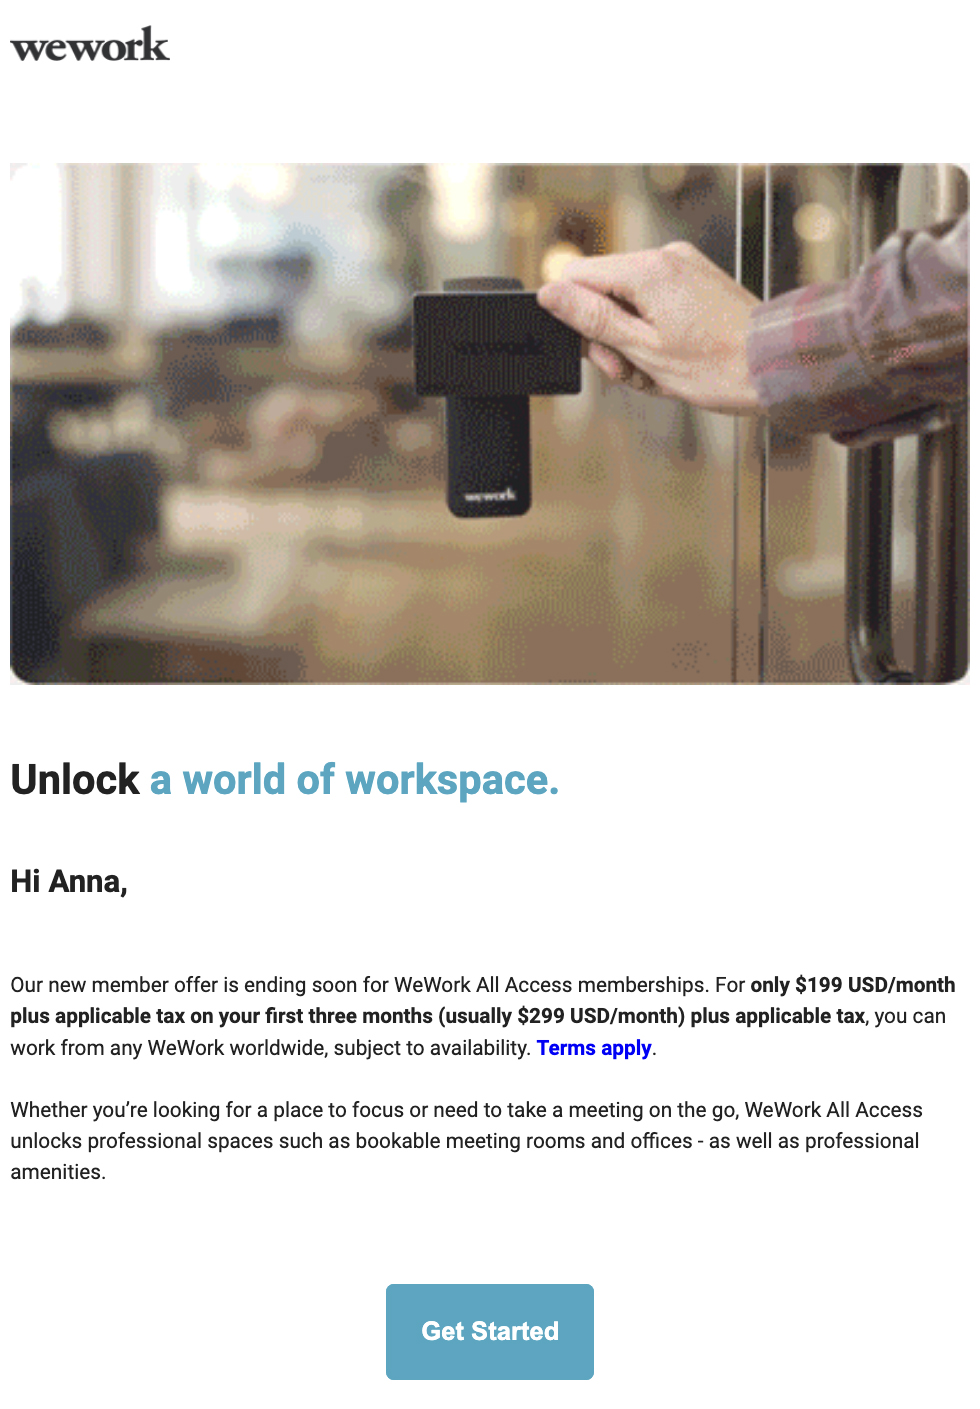 ตัวอย่างอีเมลส่งเสริมการขายของ WeWork